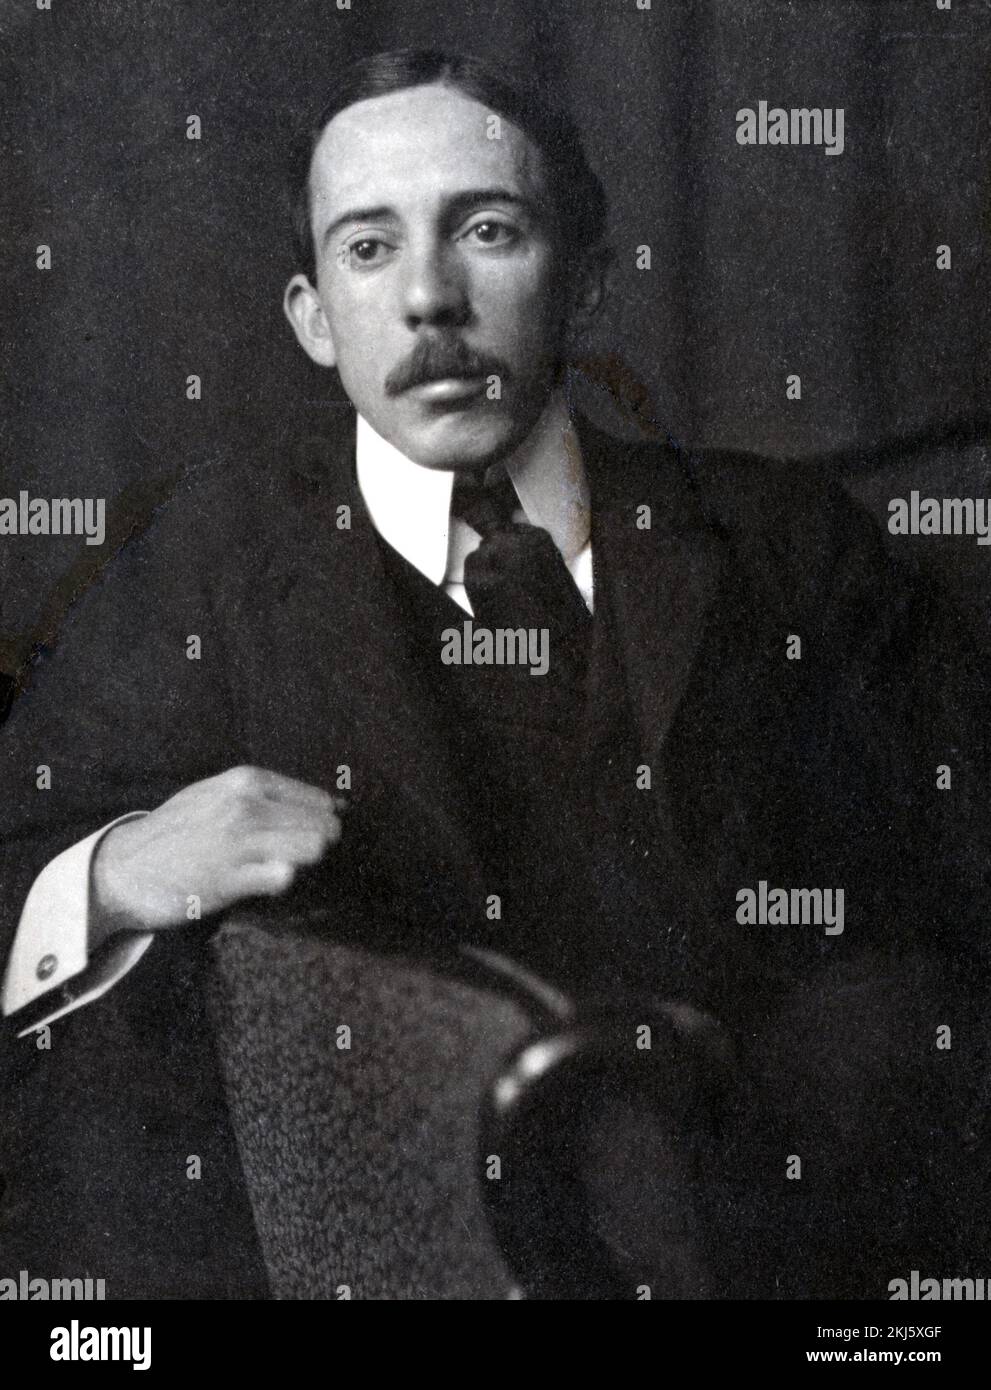 Alberto Santos-Dumont, Alberto Santos-Dumont (1873 - 1932), inventeur de l'aéronautique brésilienne Banque D'Images